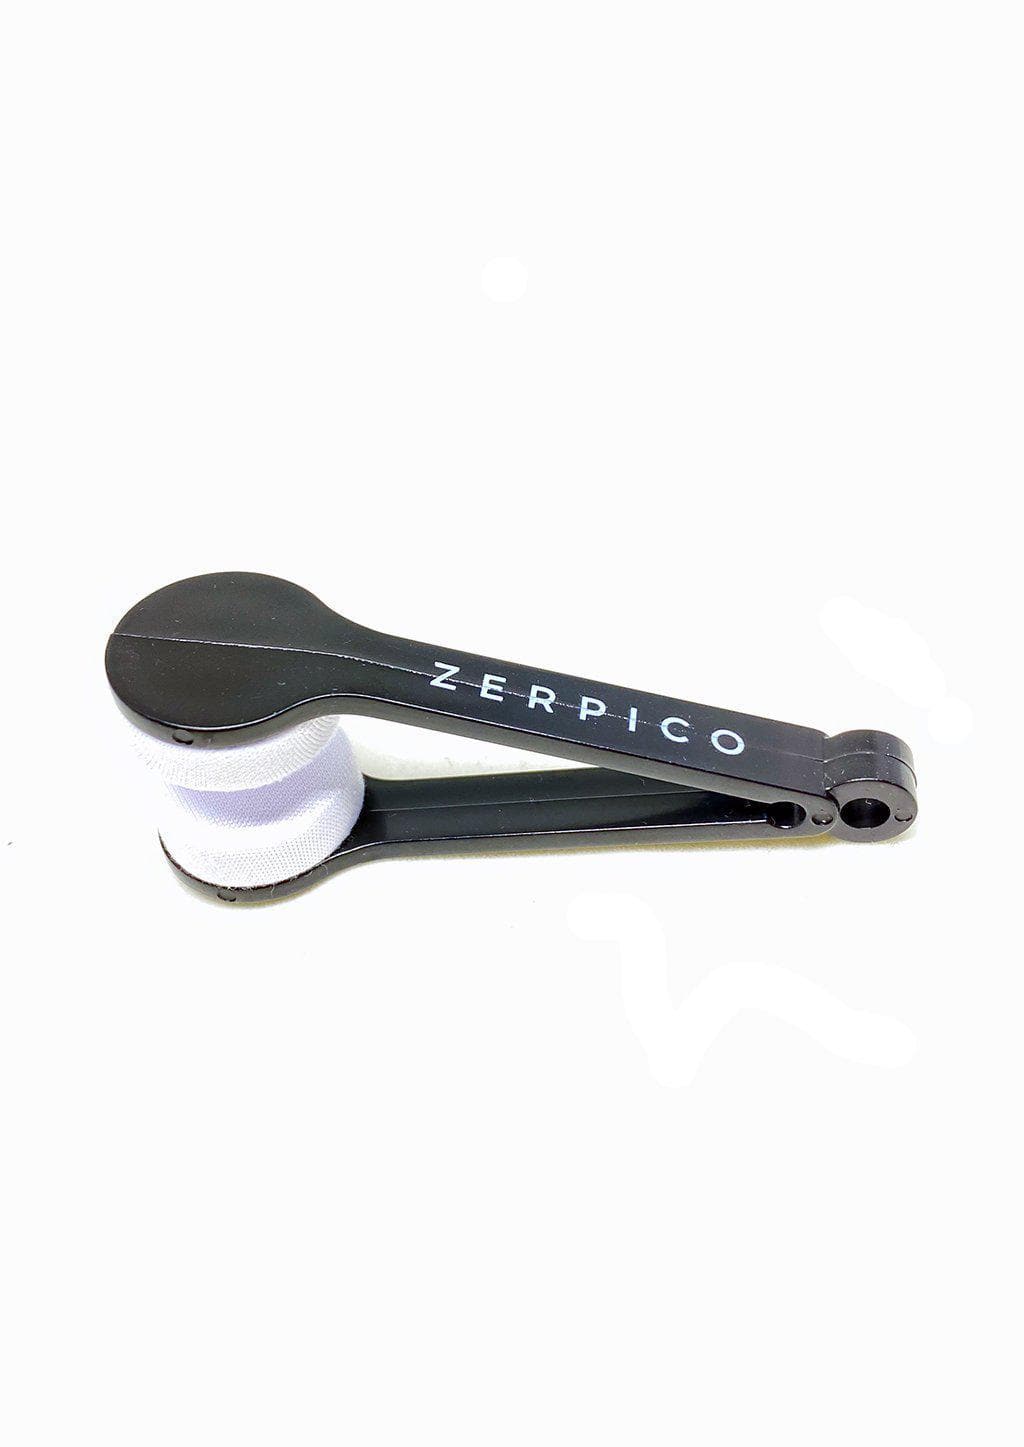 Brillenreiniger - Zerpico Portable Glasses Cleaner-0